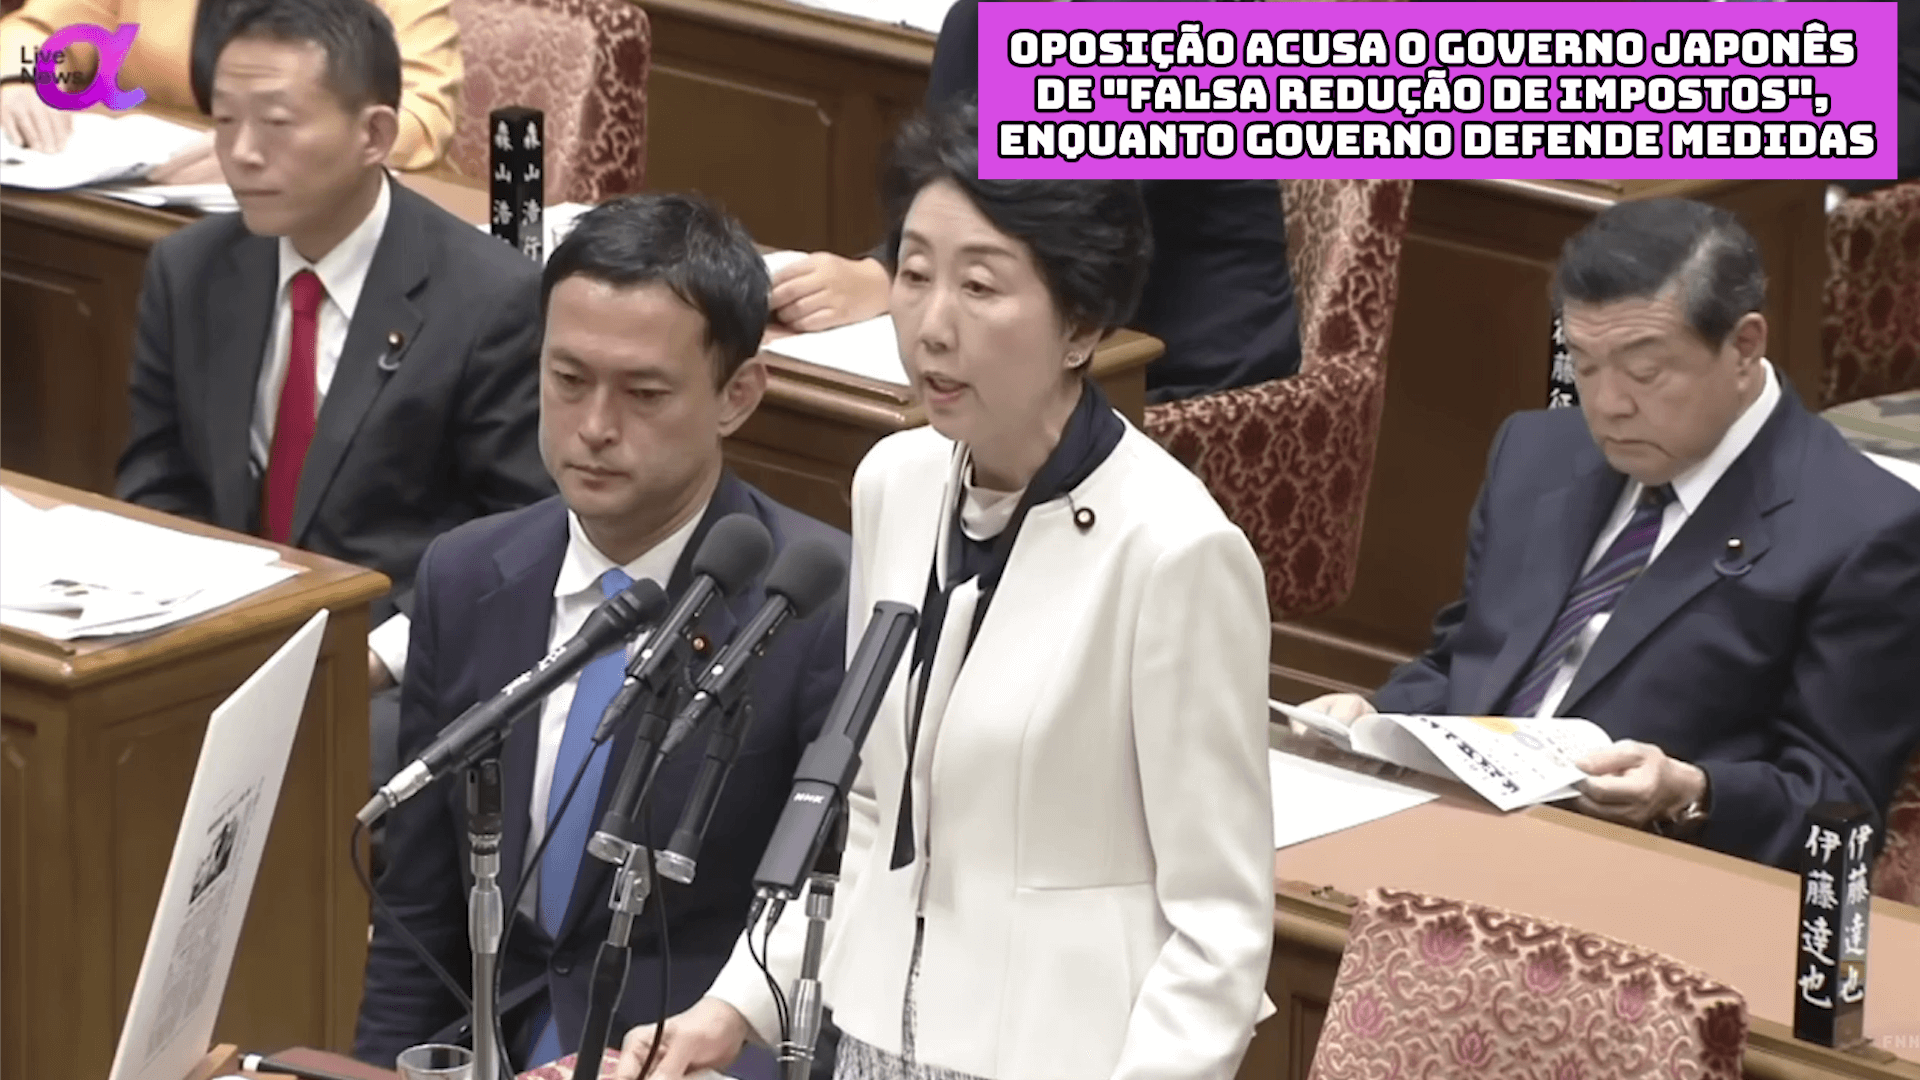 Oposição acusa o governo japonês de “falsa redução de impostos”, enquanto governo defende medidas